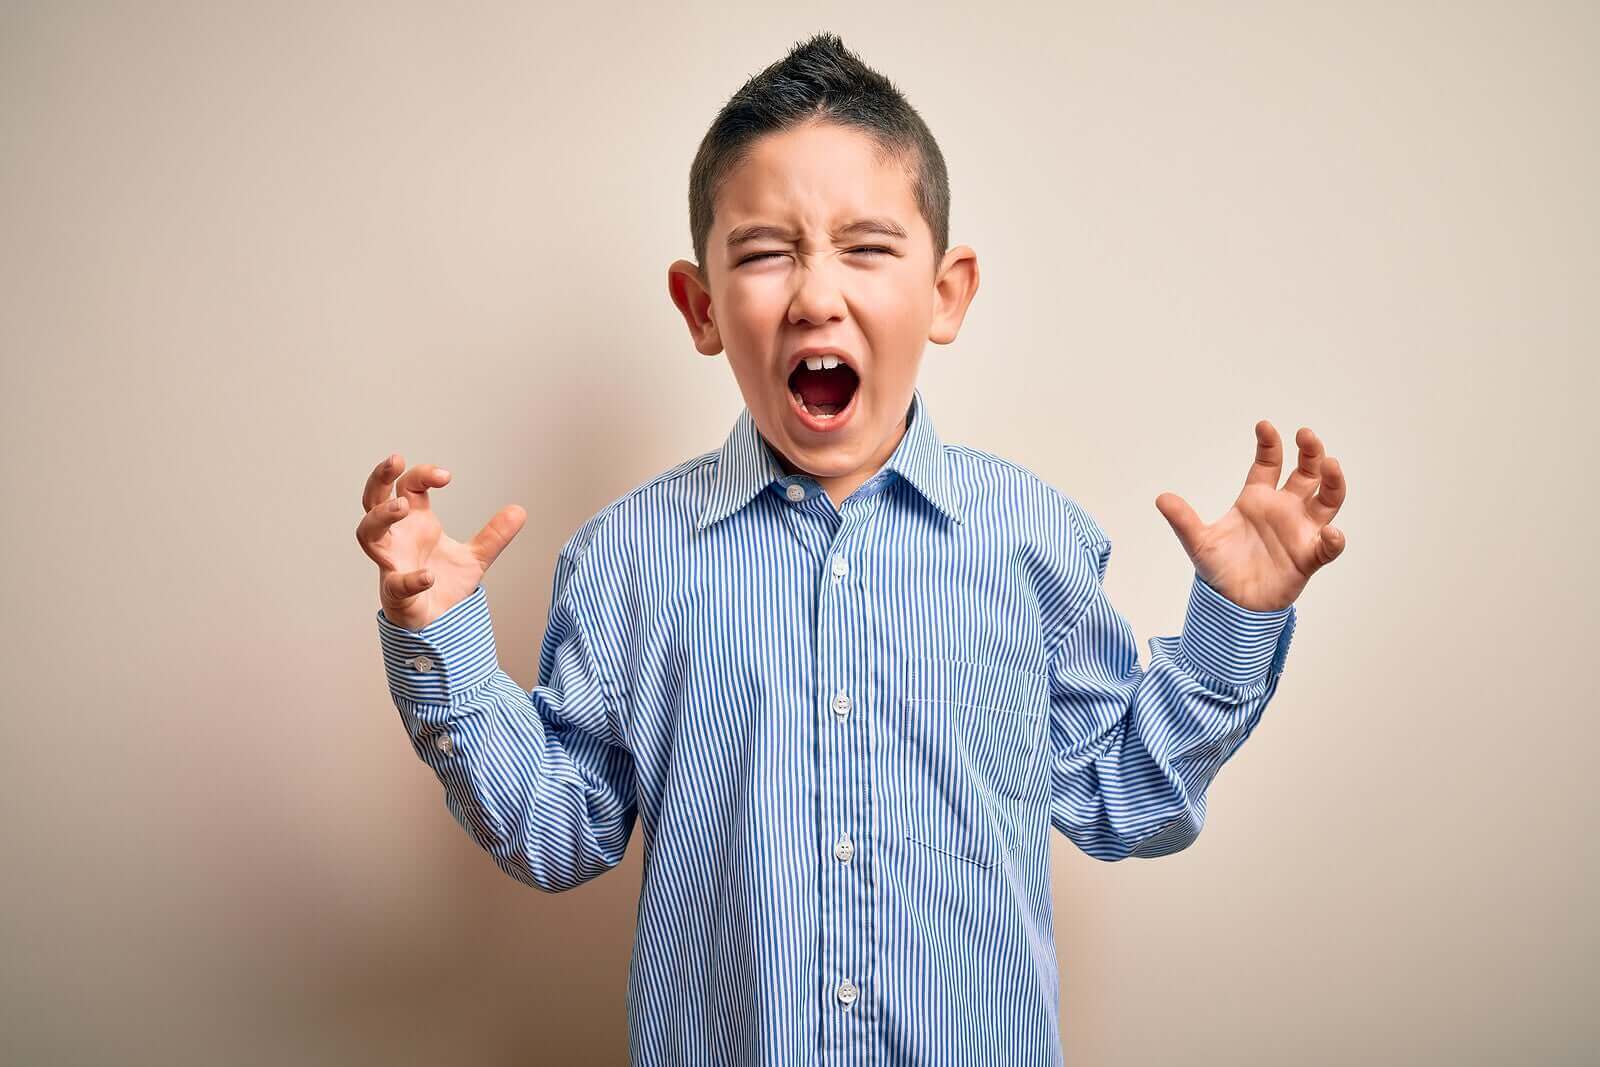 6 menetelmää lapsen aggression ja vihan hallintaan